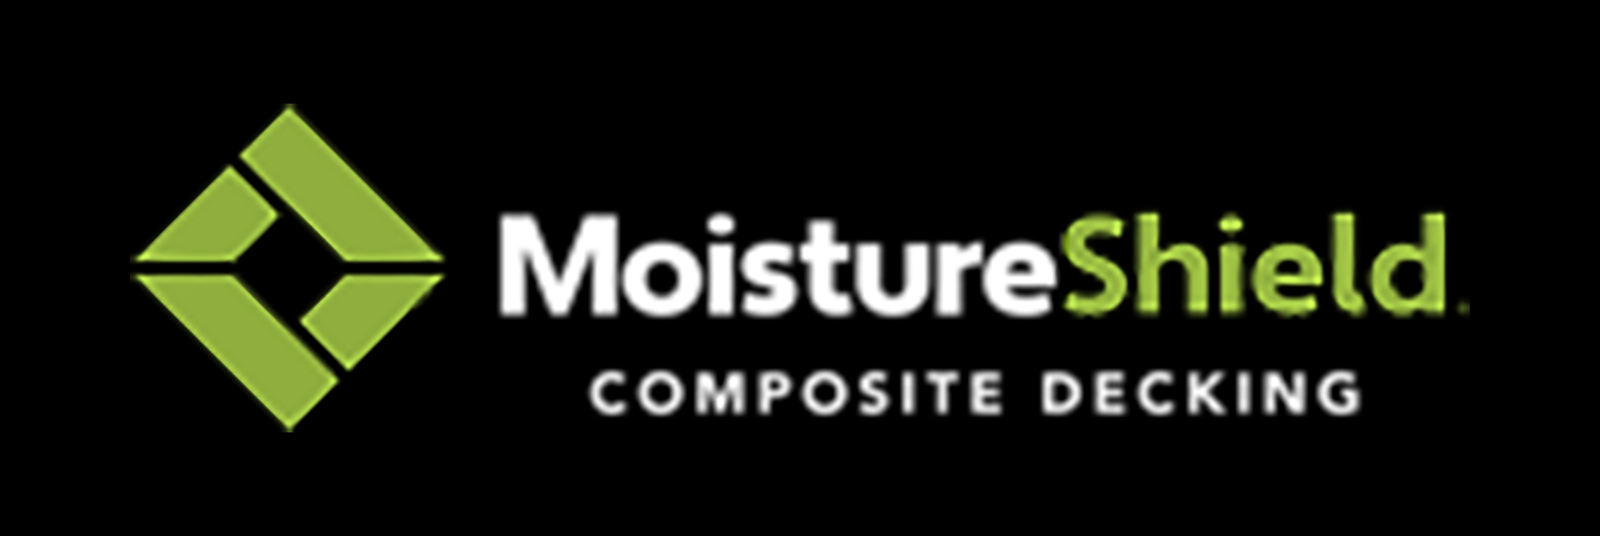 moistureshield-logo-black